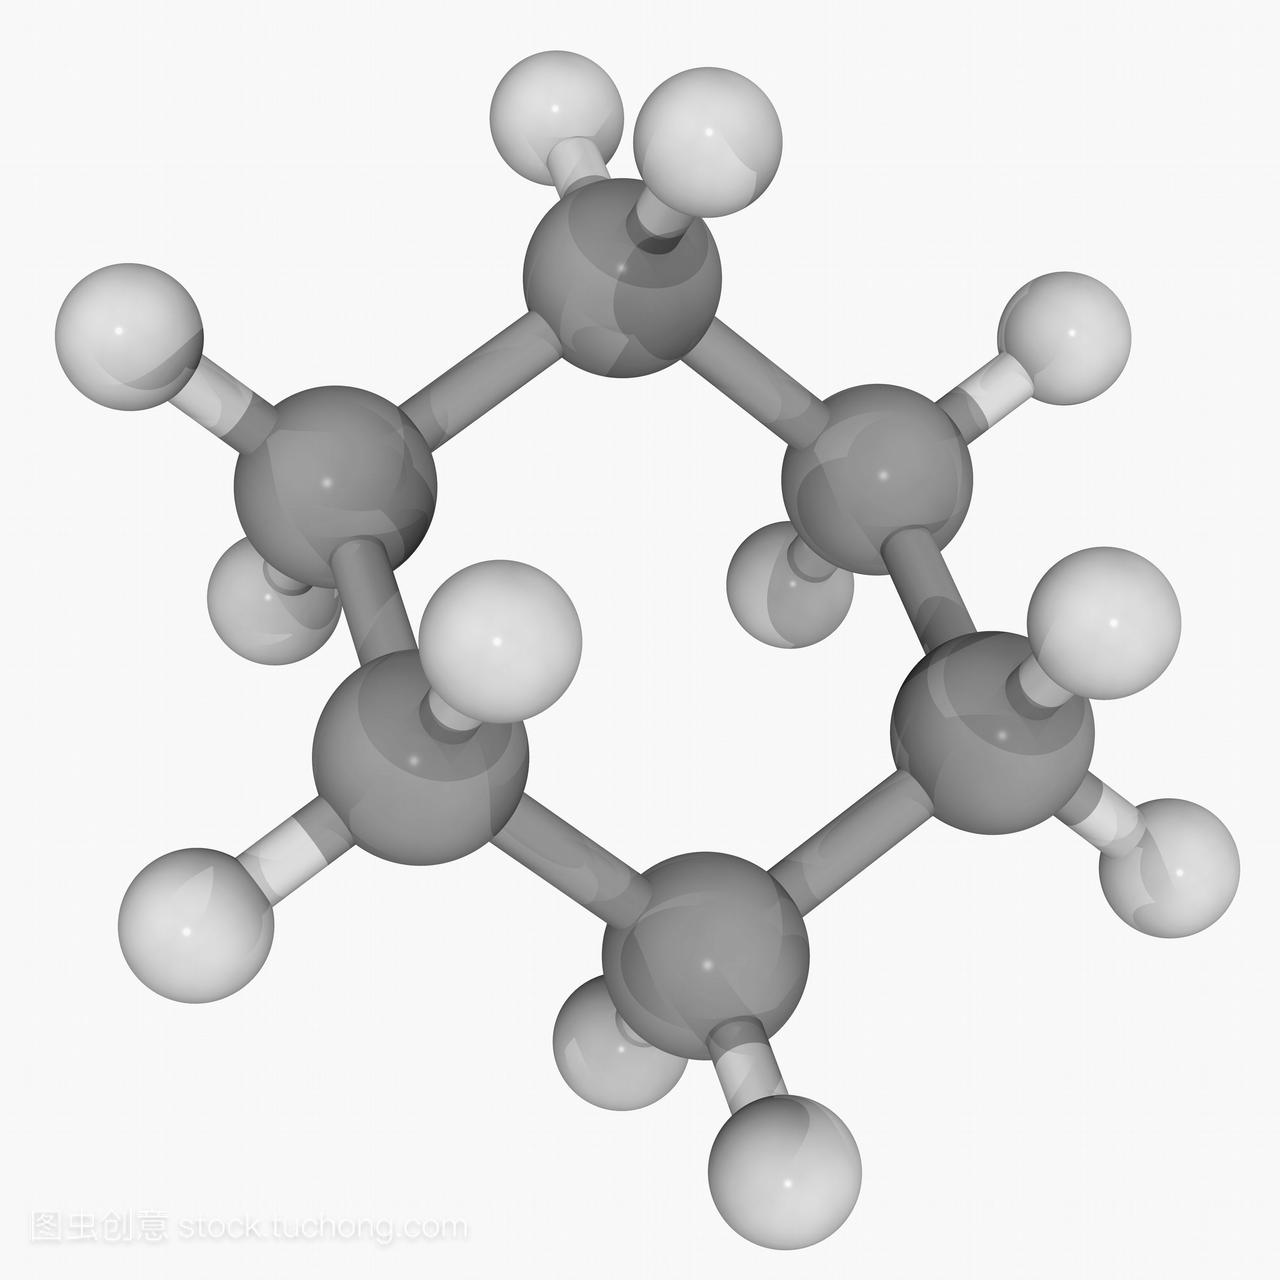 环己烷,分子模型。有机化合物,非极性溶剂,化学